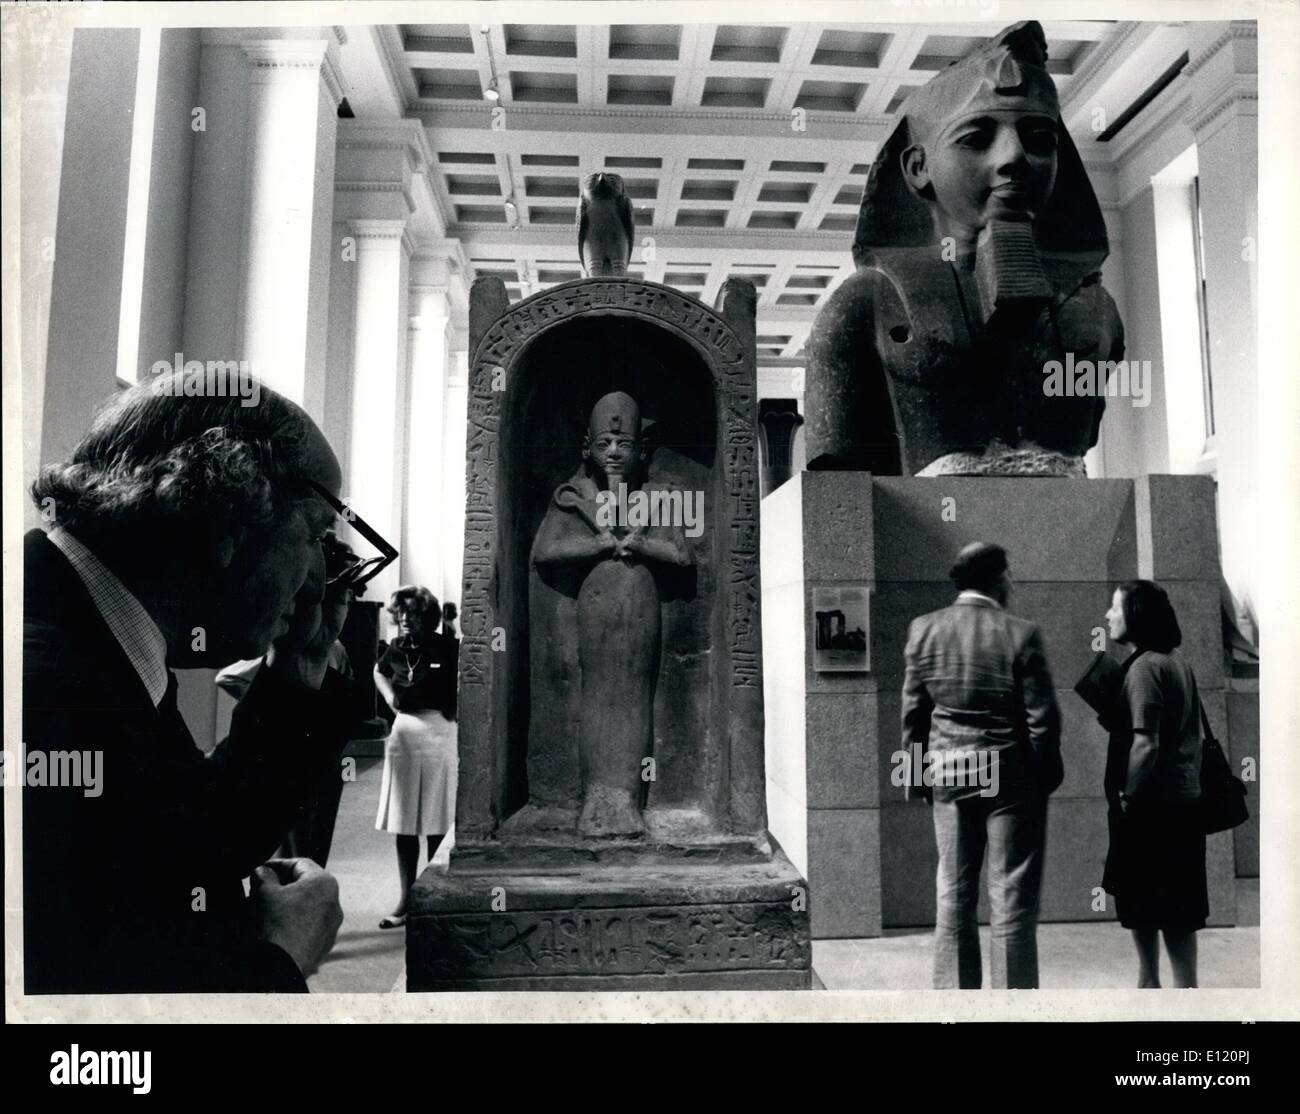 Sett. 09, 1981 - La signora Thatcher apre una nuova galleria egiziano al British Museum; il primo ministro sig.ra Margaret Thatcher ha aperto la riorganizzazione della Scultura egiziana Gallery presso il British Museum di ieri. La galleria è stata aperta per la prima volta nel 1834 e stato da ultimo riorganizzati in modo esauriente nella metà - 1930s. Dopo aver aperto la mostra la signora Thatcher ha avuto uno sguardo più da vicino ad alcune delle sculture. La foto mostra i visitatori ispezionare una statua di Ramses II (r) e una figura di Osiride in un santuario di calcare. Foto Stock